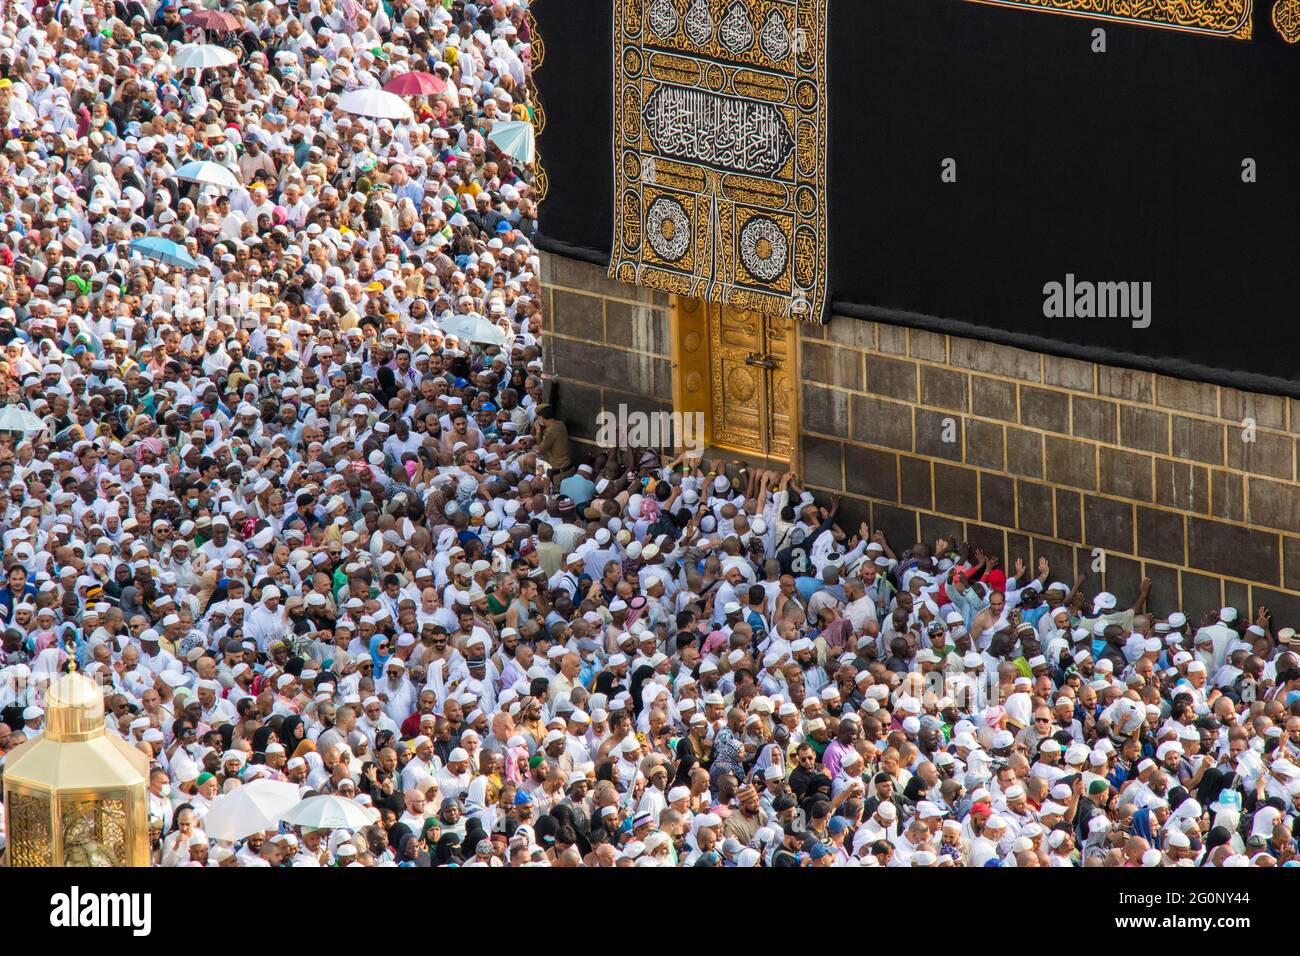 Sainte Kaaba à la Mecque. Porte de Kaaba - Multazam. La foule de pèlerins musulmans contourne les ambulances - tawaf. La Mecque - Arabie saoudite : août 2021 Banque D'Images